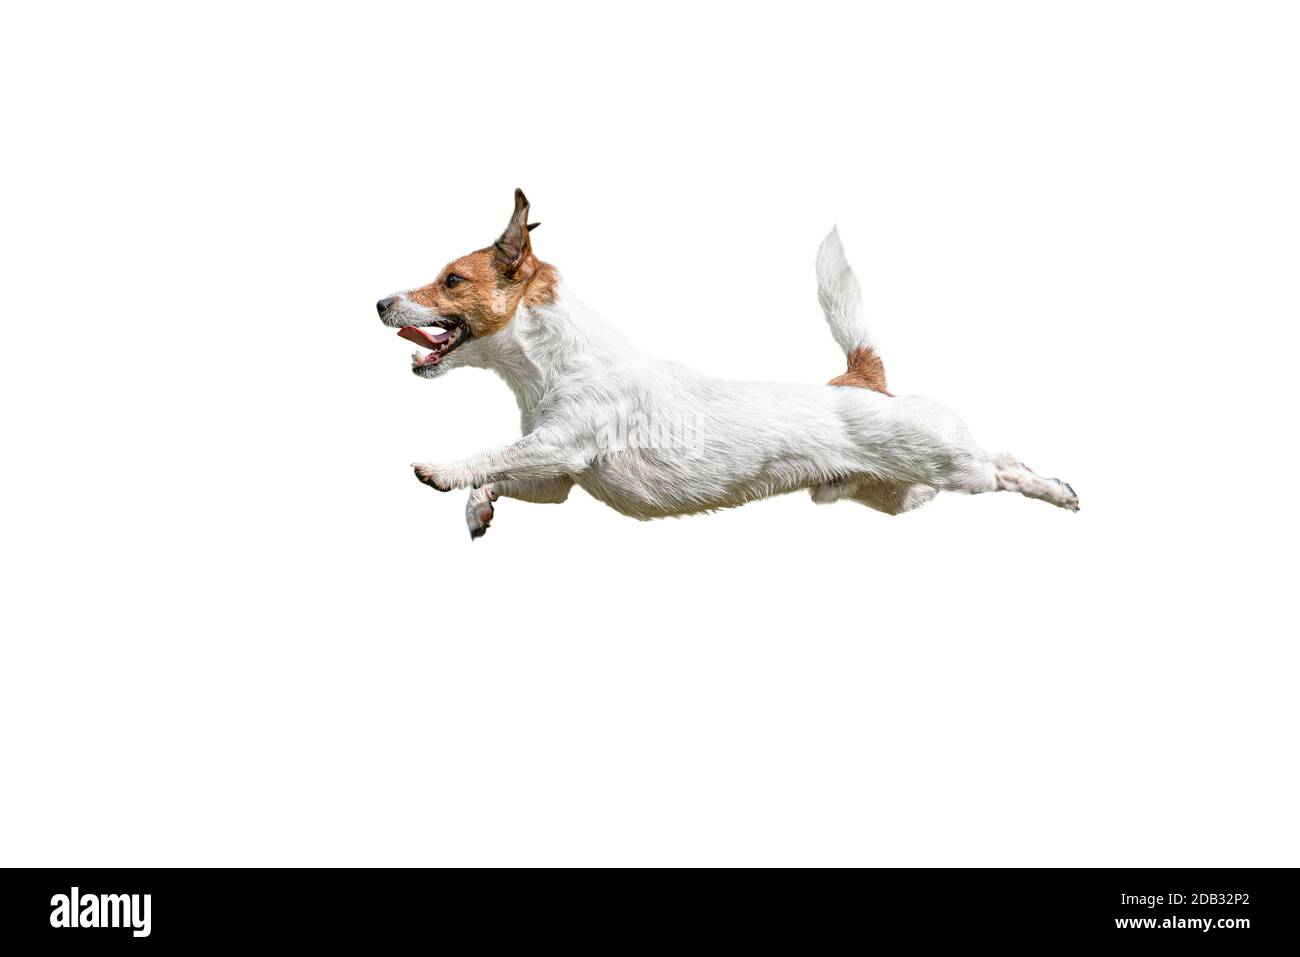 Vue du profil de la course rapide et du saut Jack Russell Terrier chien sur fond blanc Banque D'Images